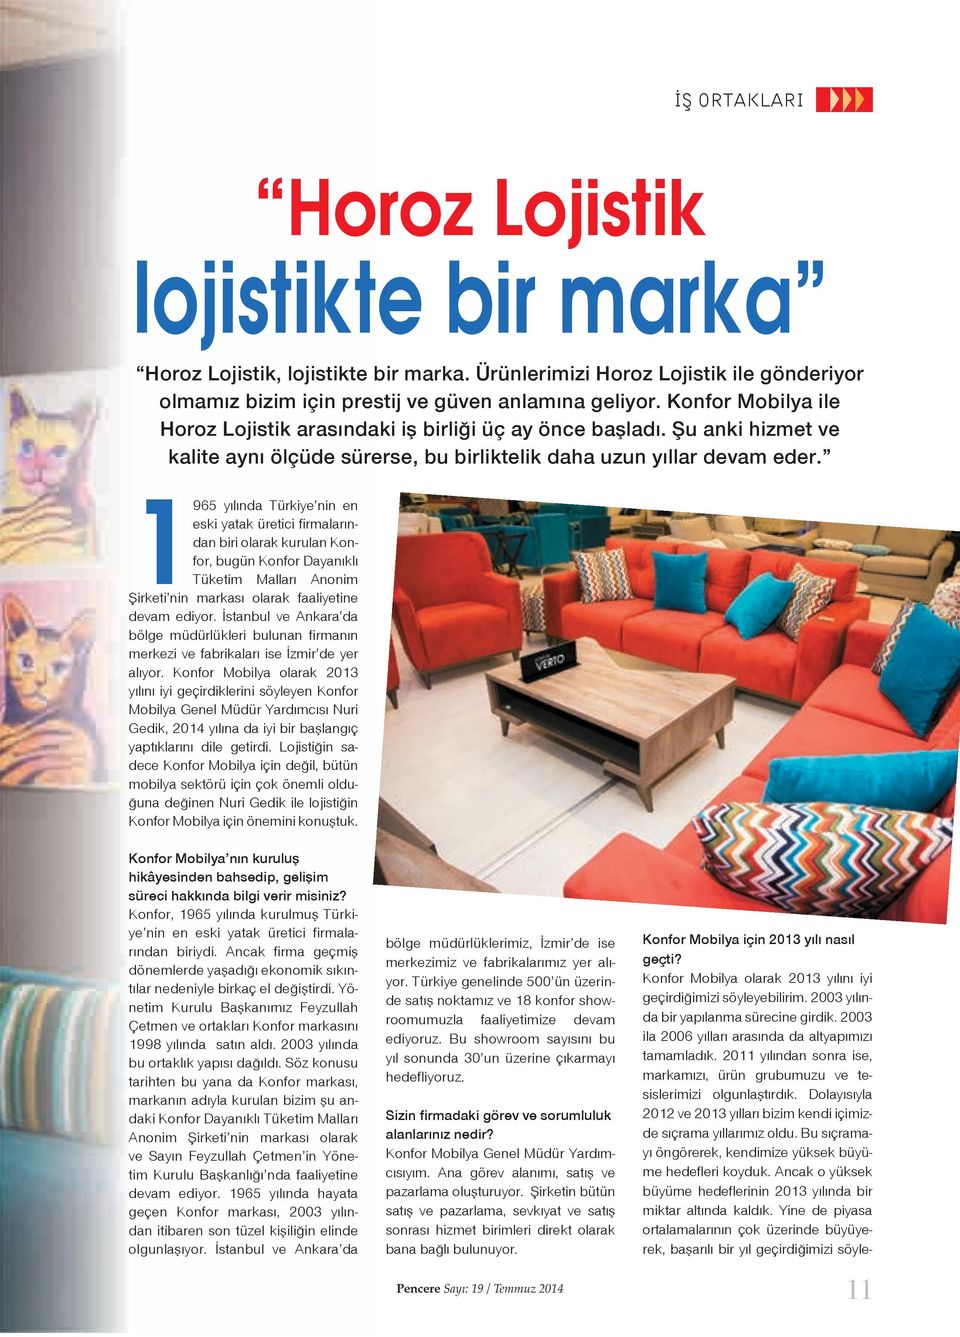 1965 yılında Türkiye nin en eski yatak üretici firmalarından biri olarak kurulan Konfor, bugün Konfor Dayanıklı Tüketim Malları Anonim irketi nin markası olarak faaliyetine devam ediyor.